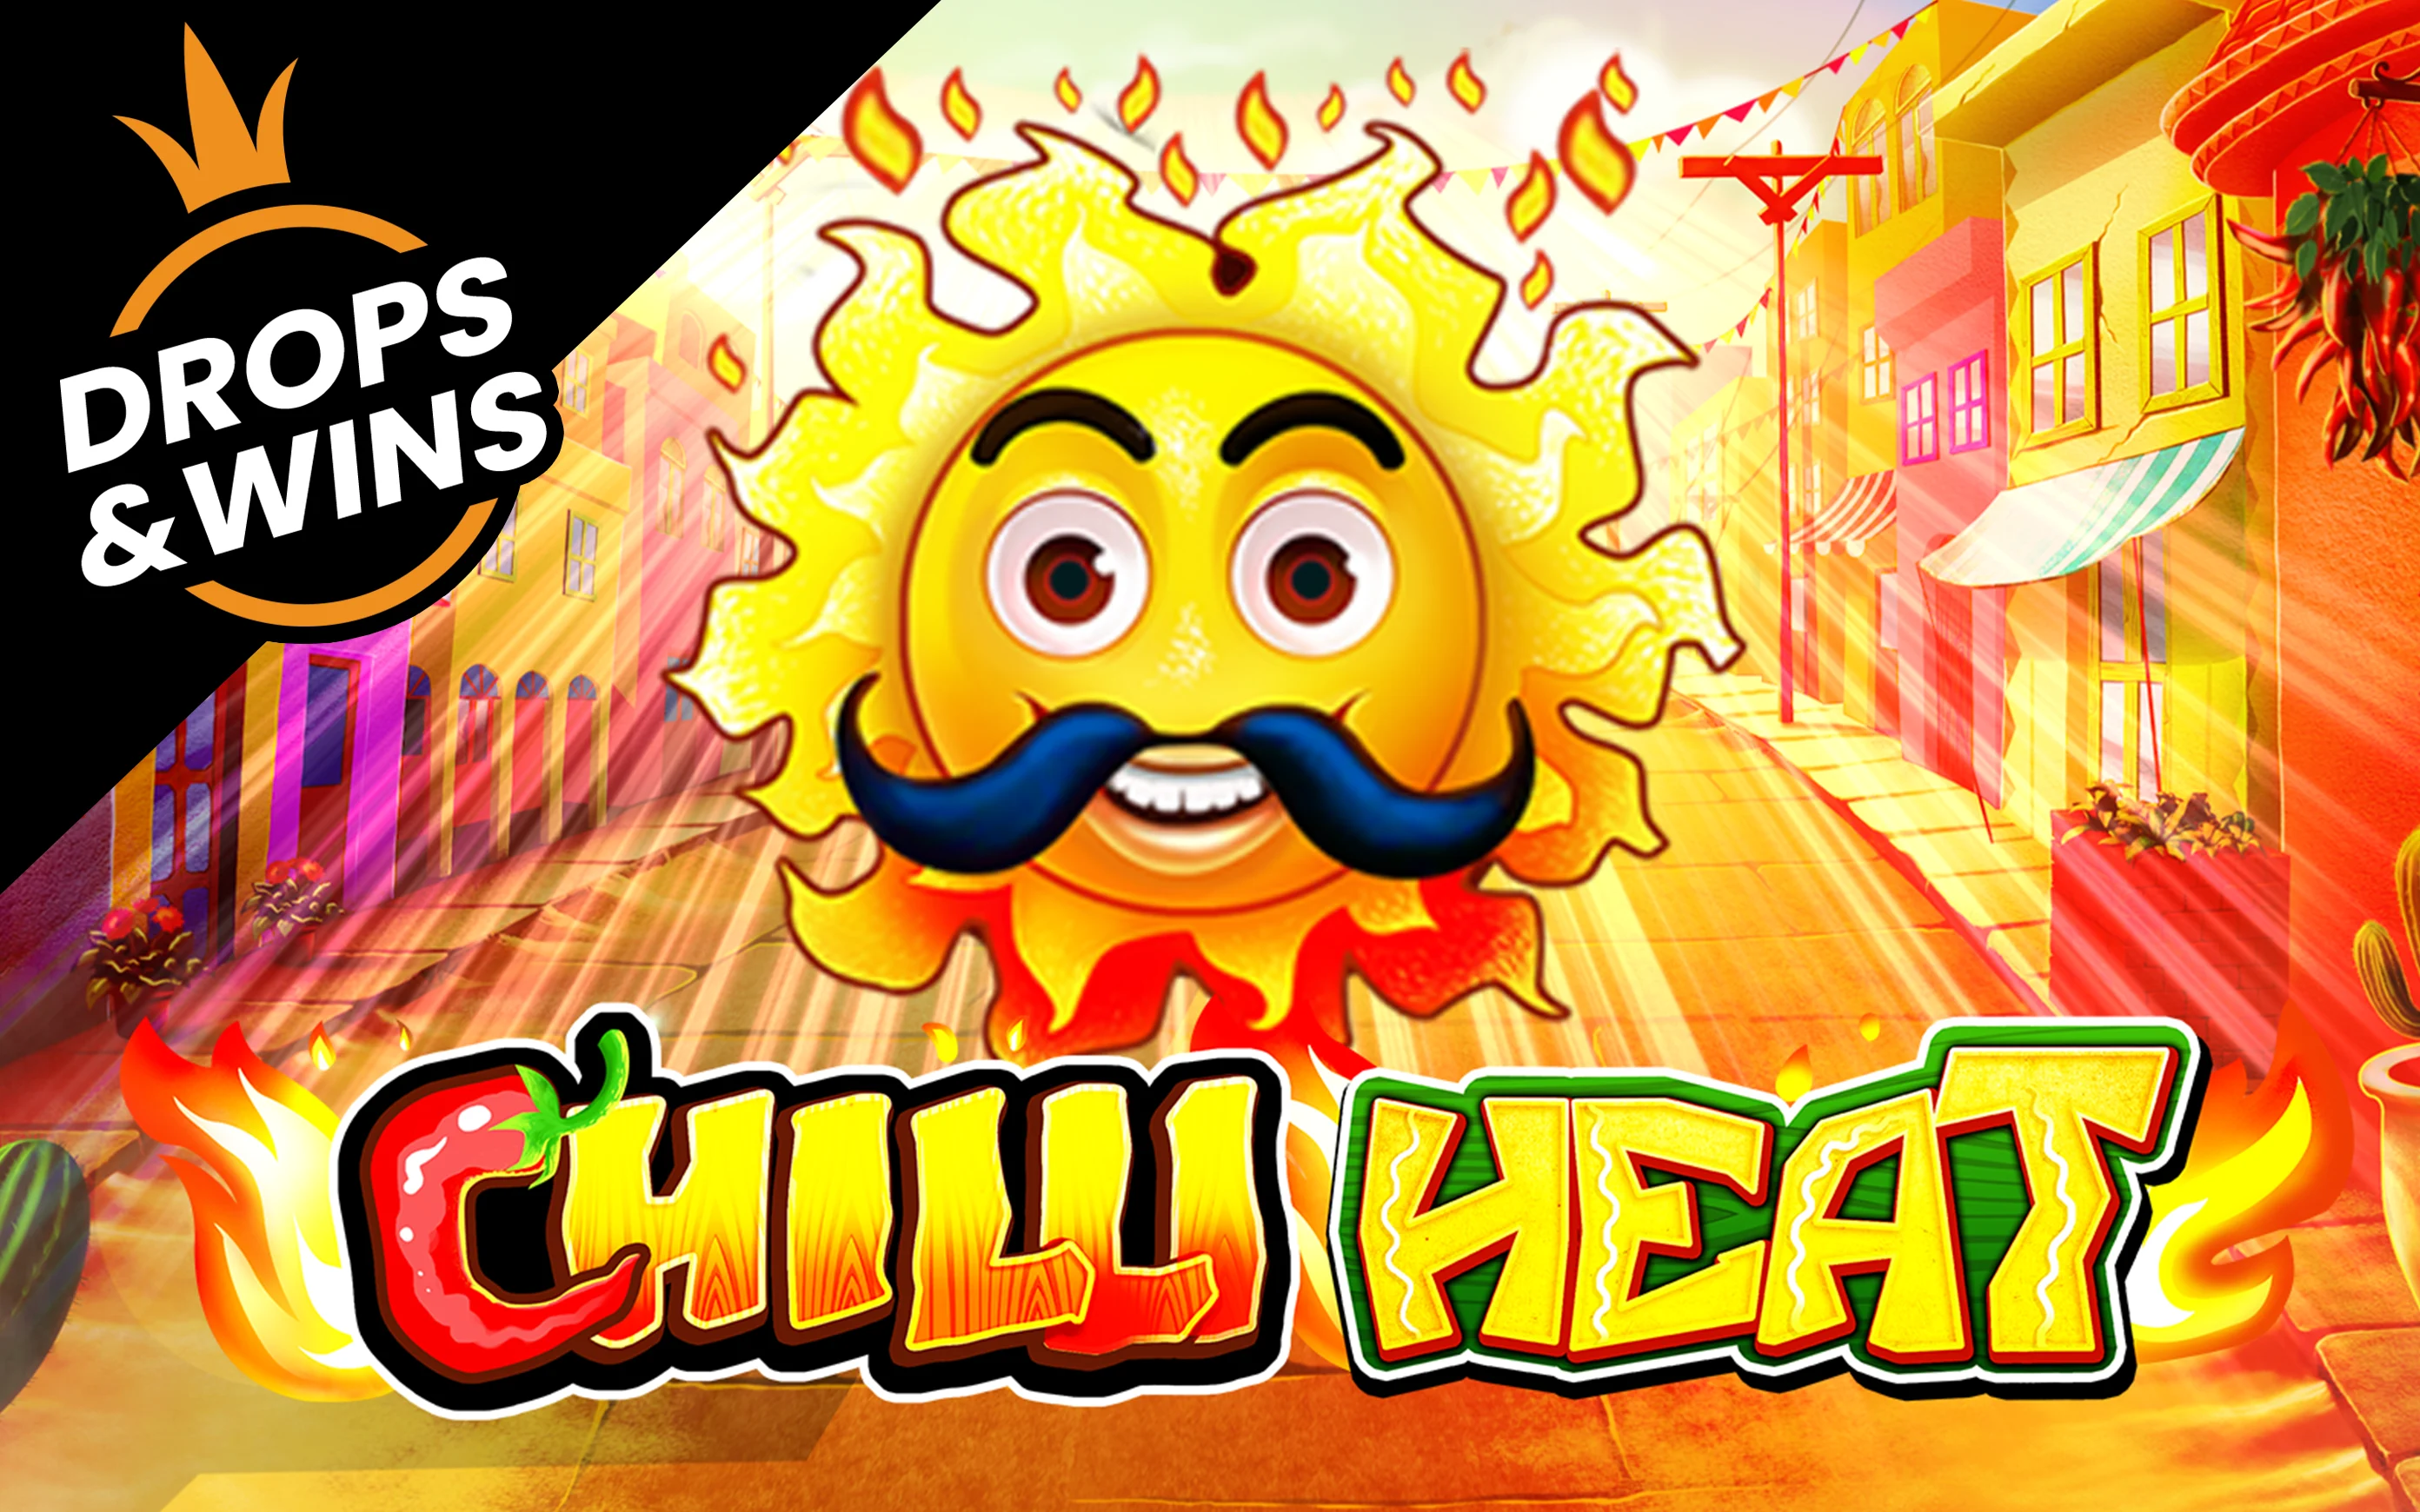 Play Chilli Heat on Starcasino.be online casino